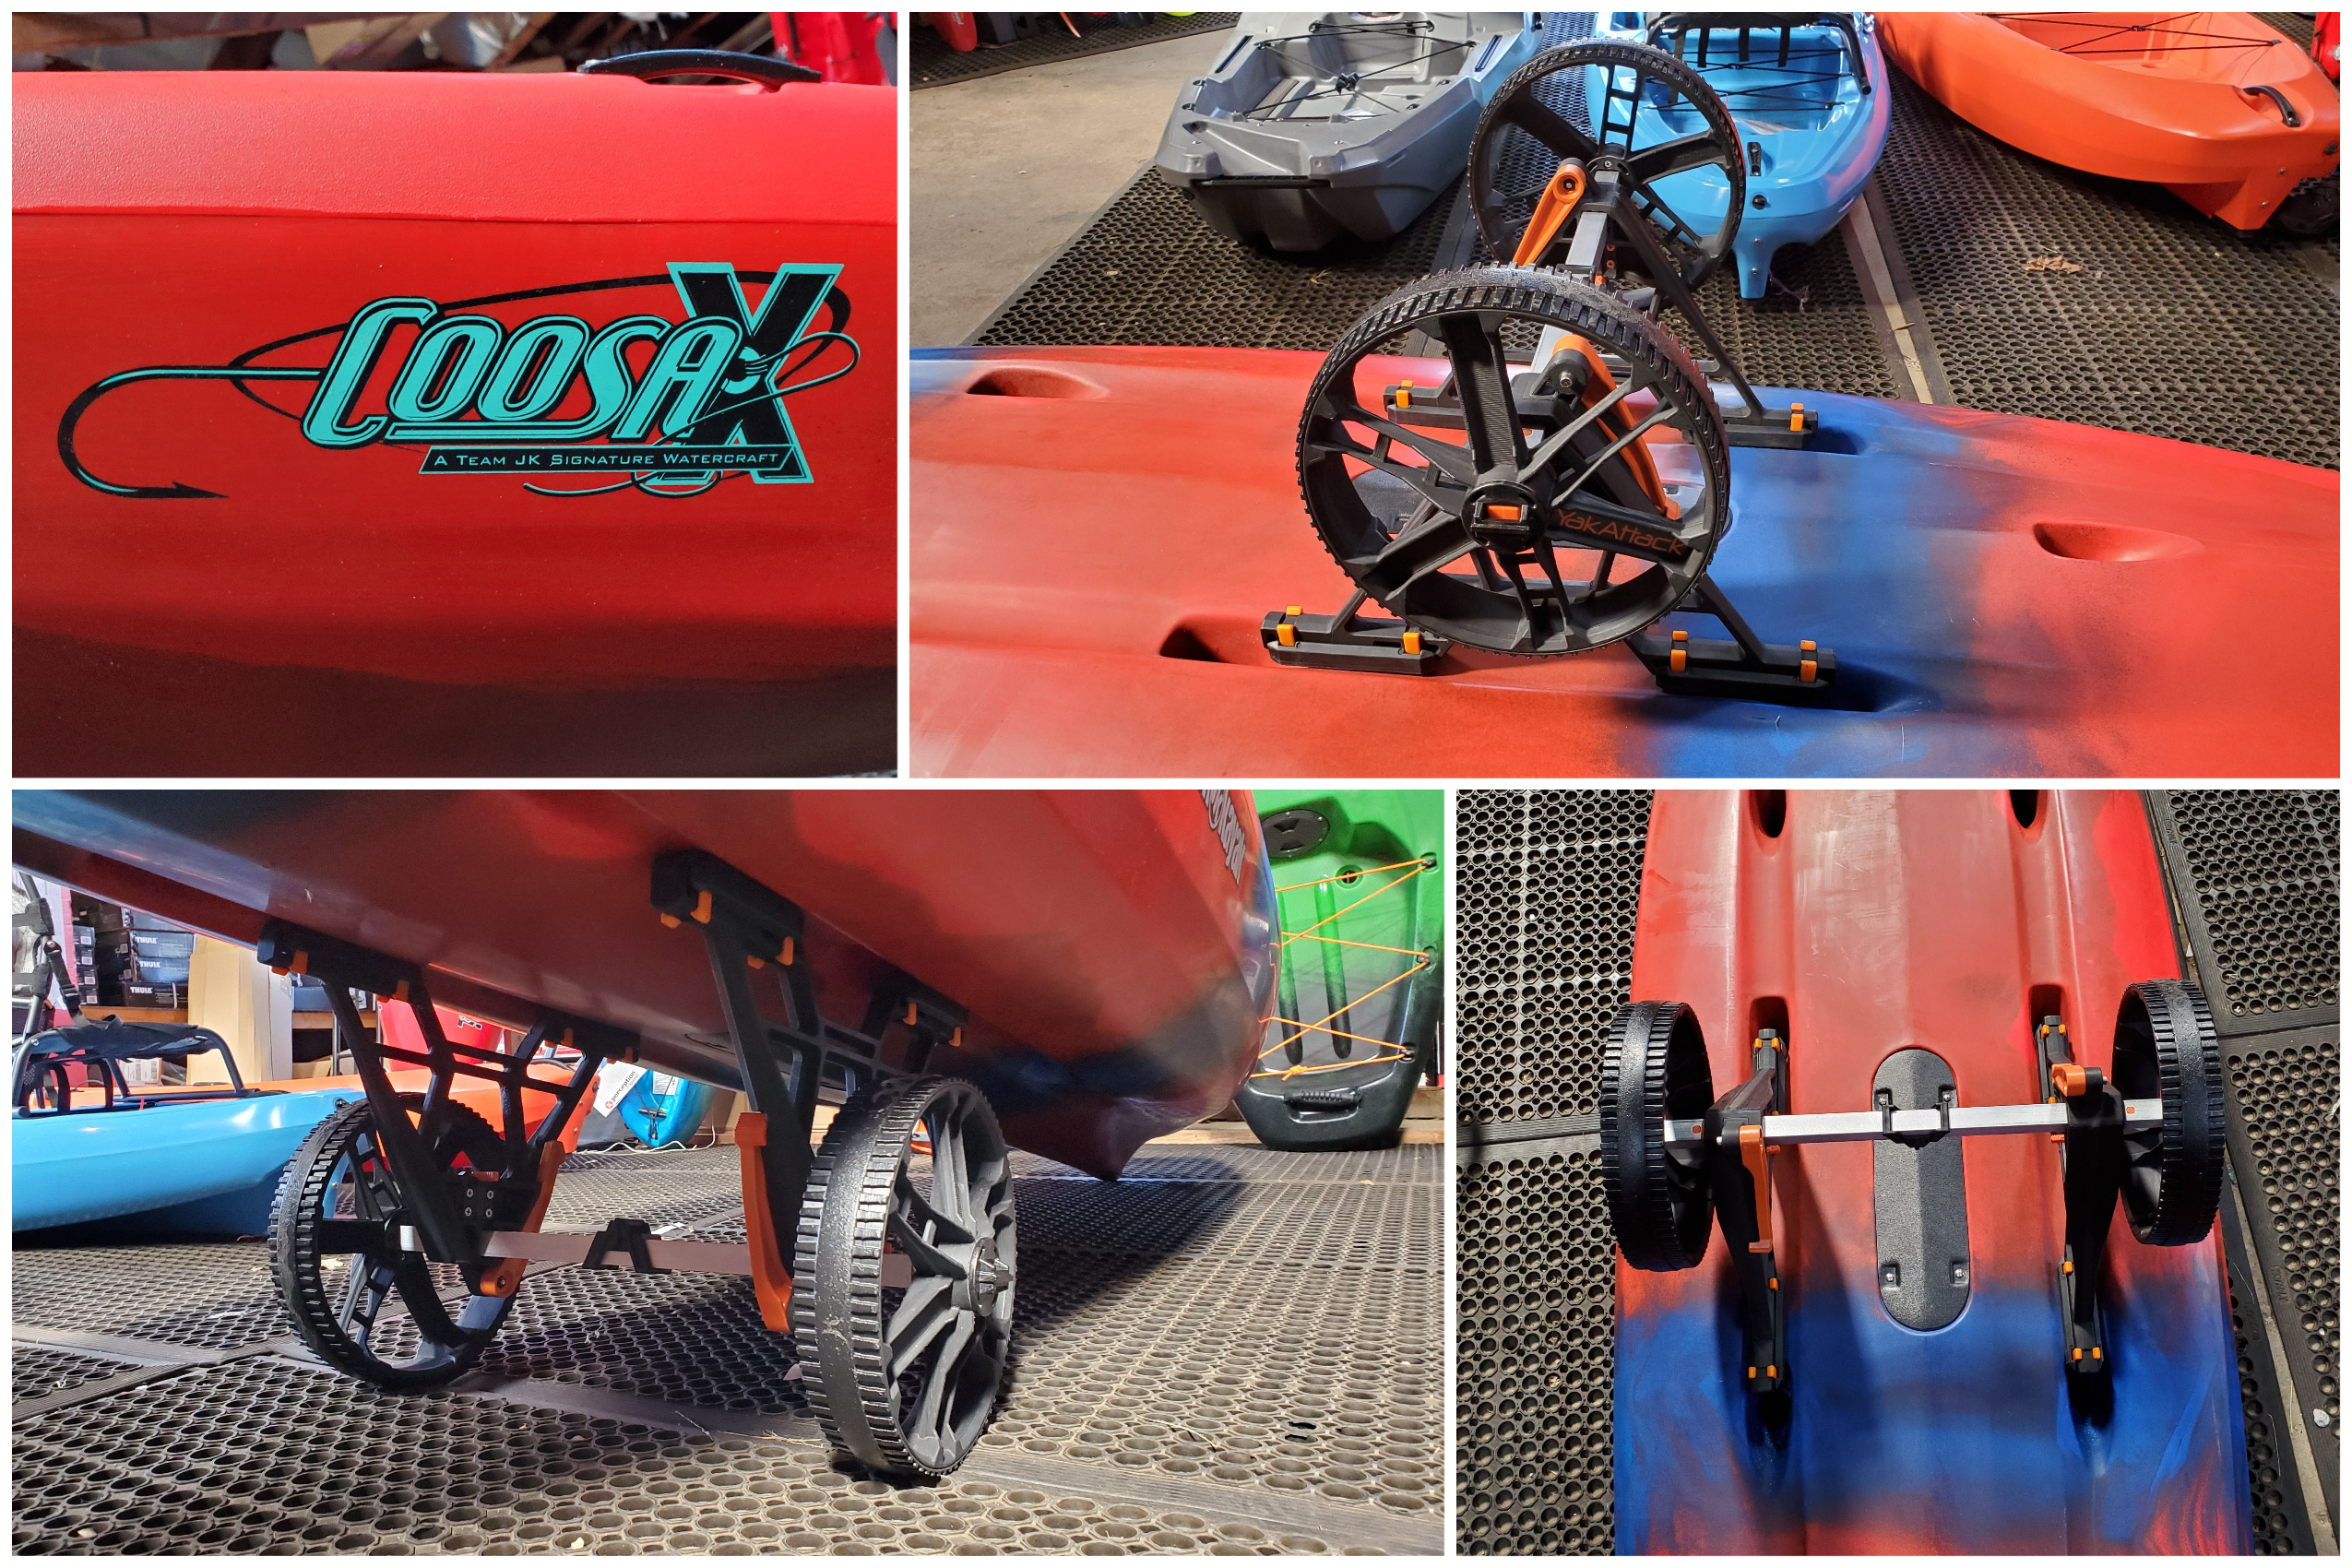 Jackson Coosa X with YakAttack TowNStow Bunkster Kayak Cart